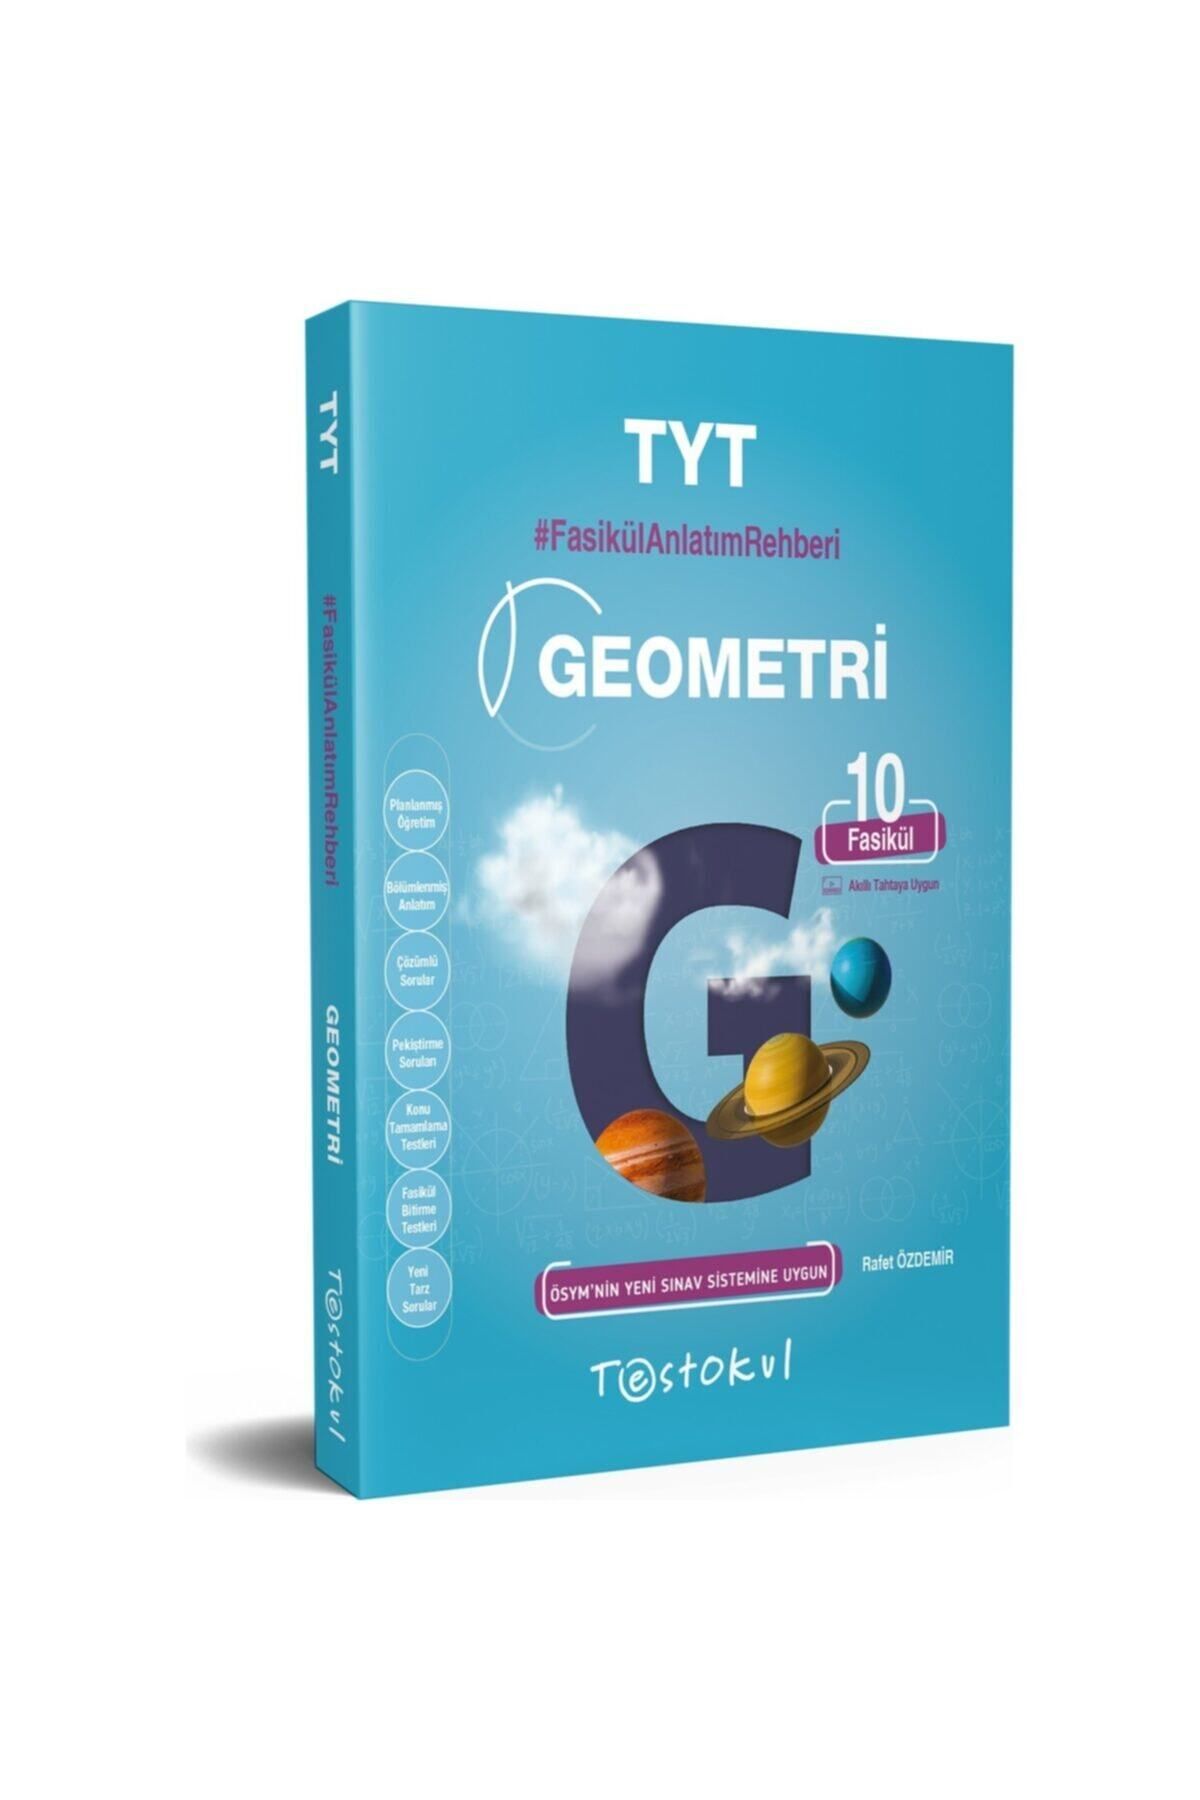 Test Okul Yayınları Tyt Geometri Fasikül Anlatım Rehberi